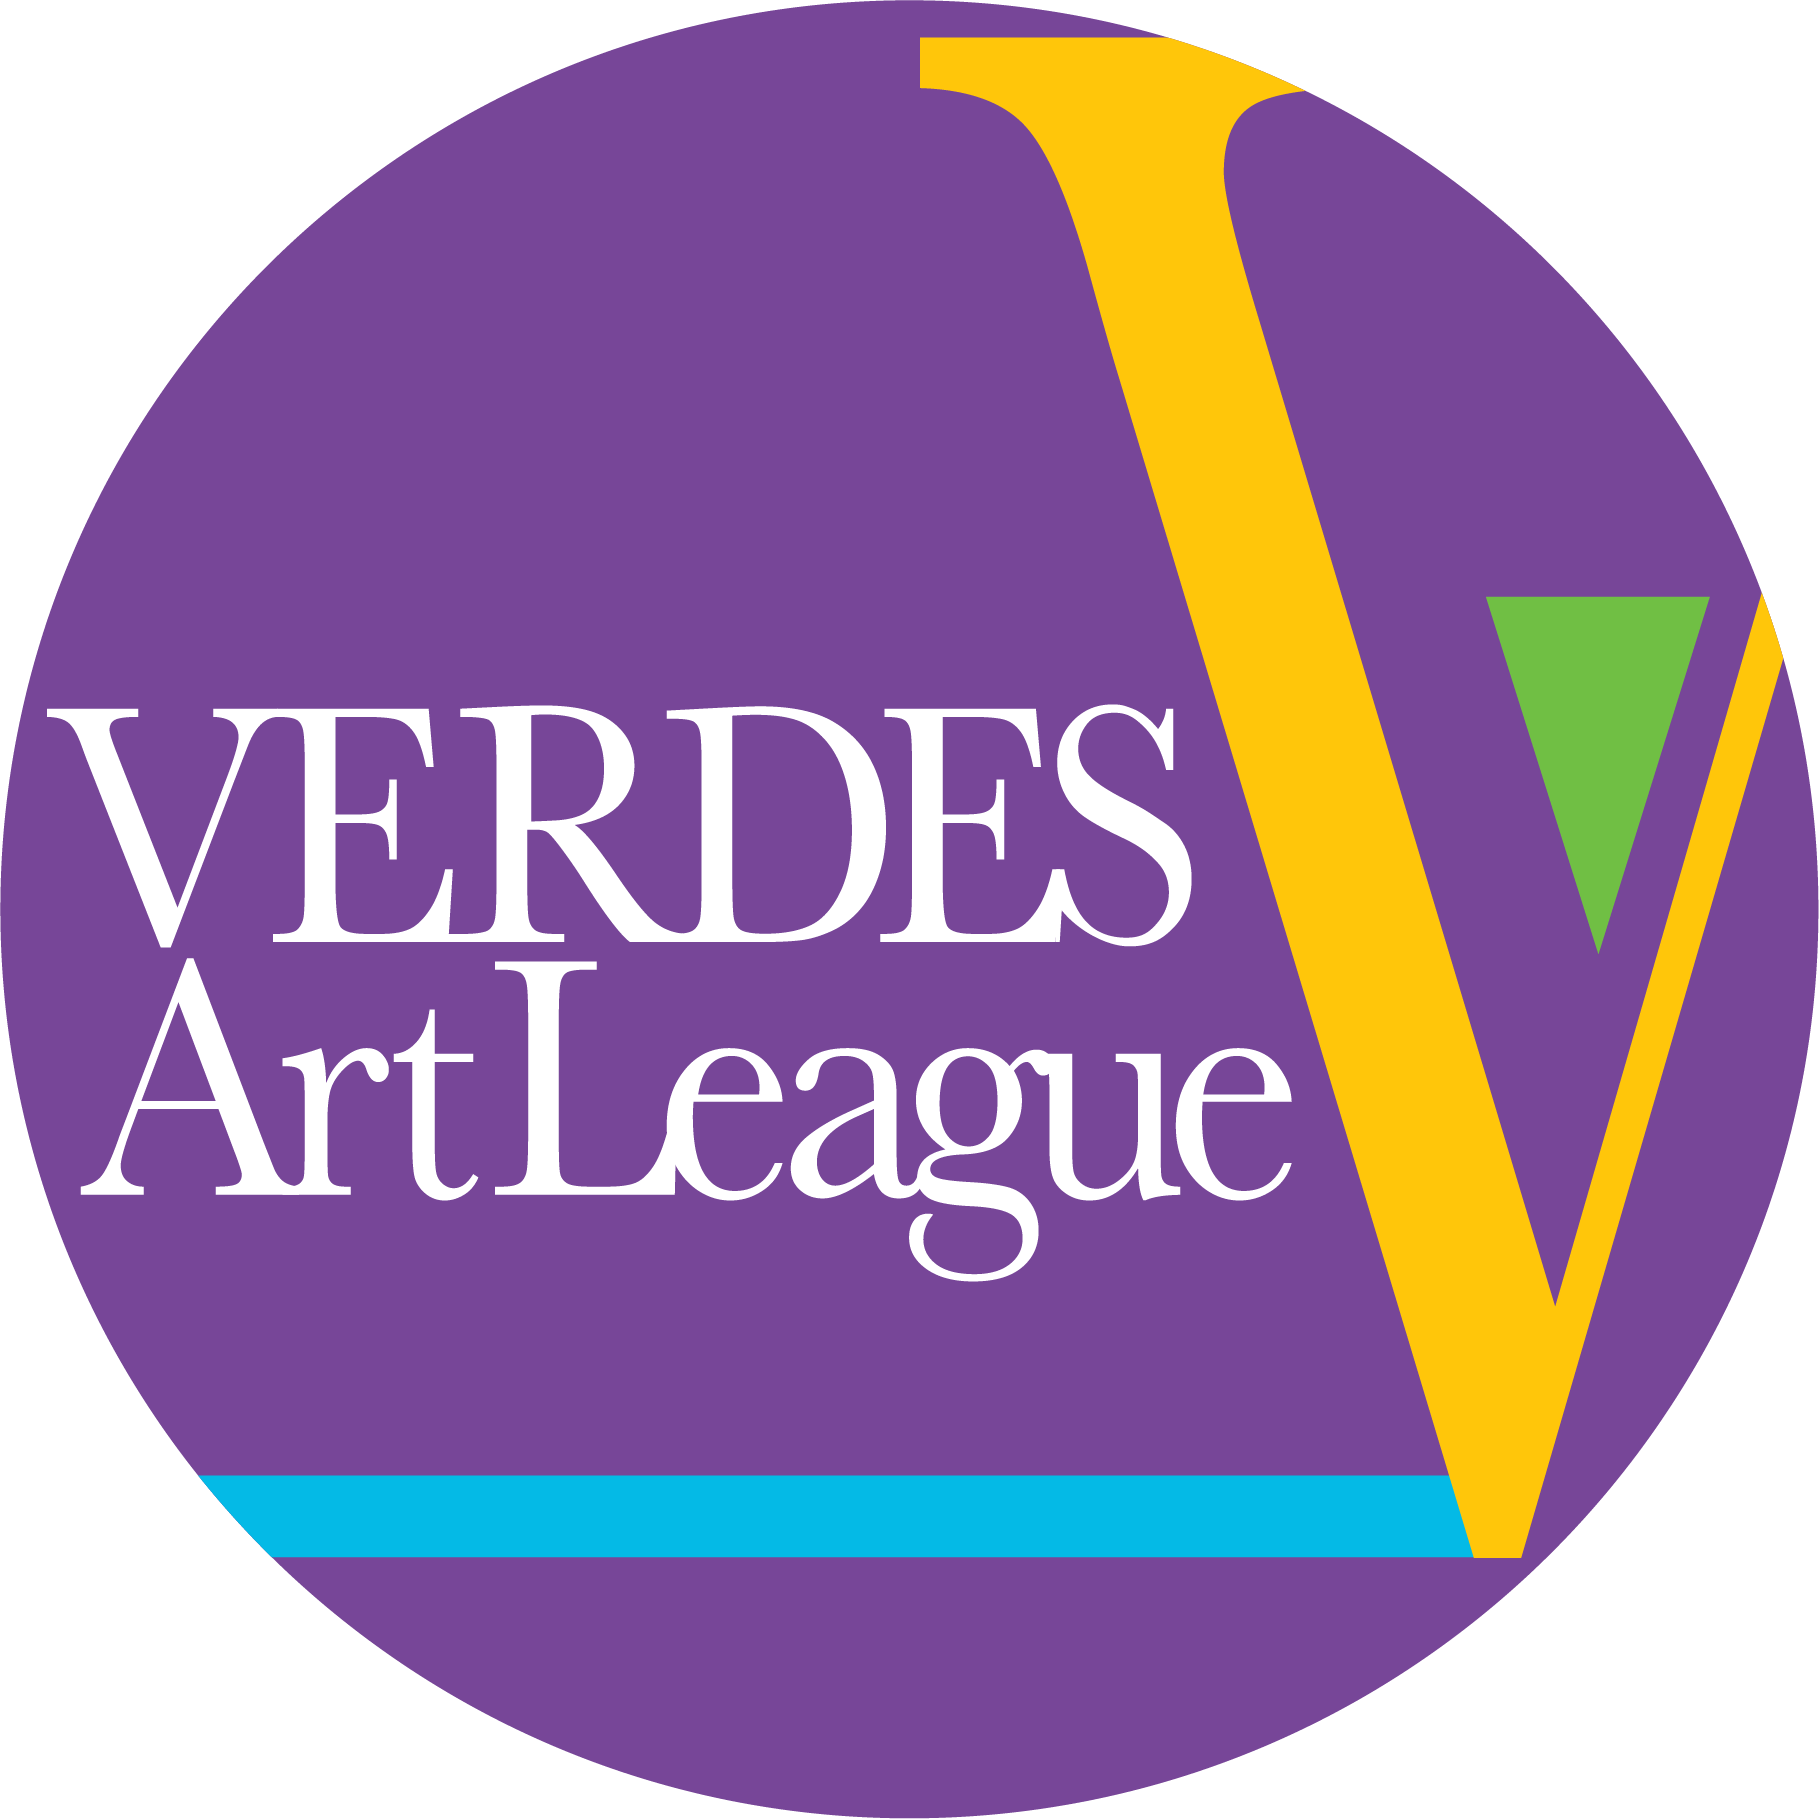 Verdes Art League